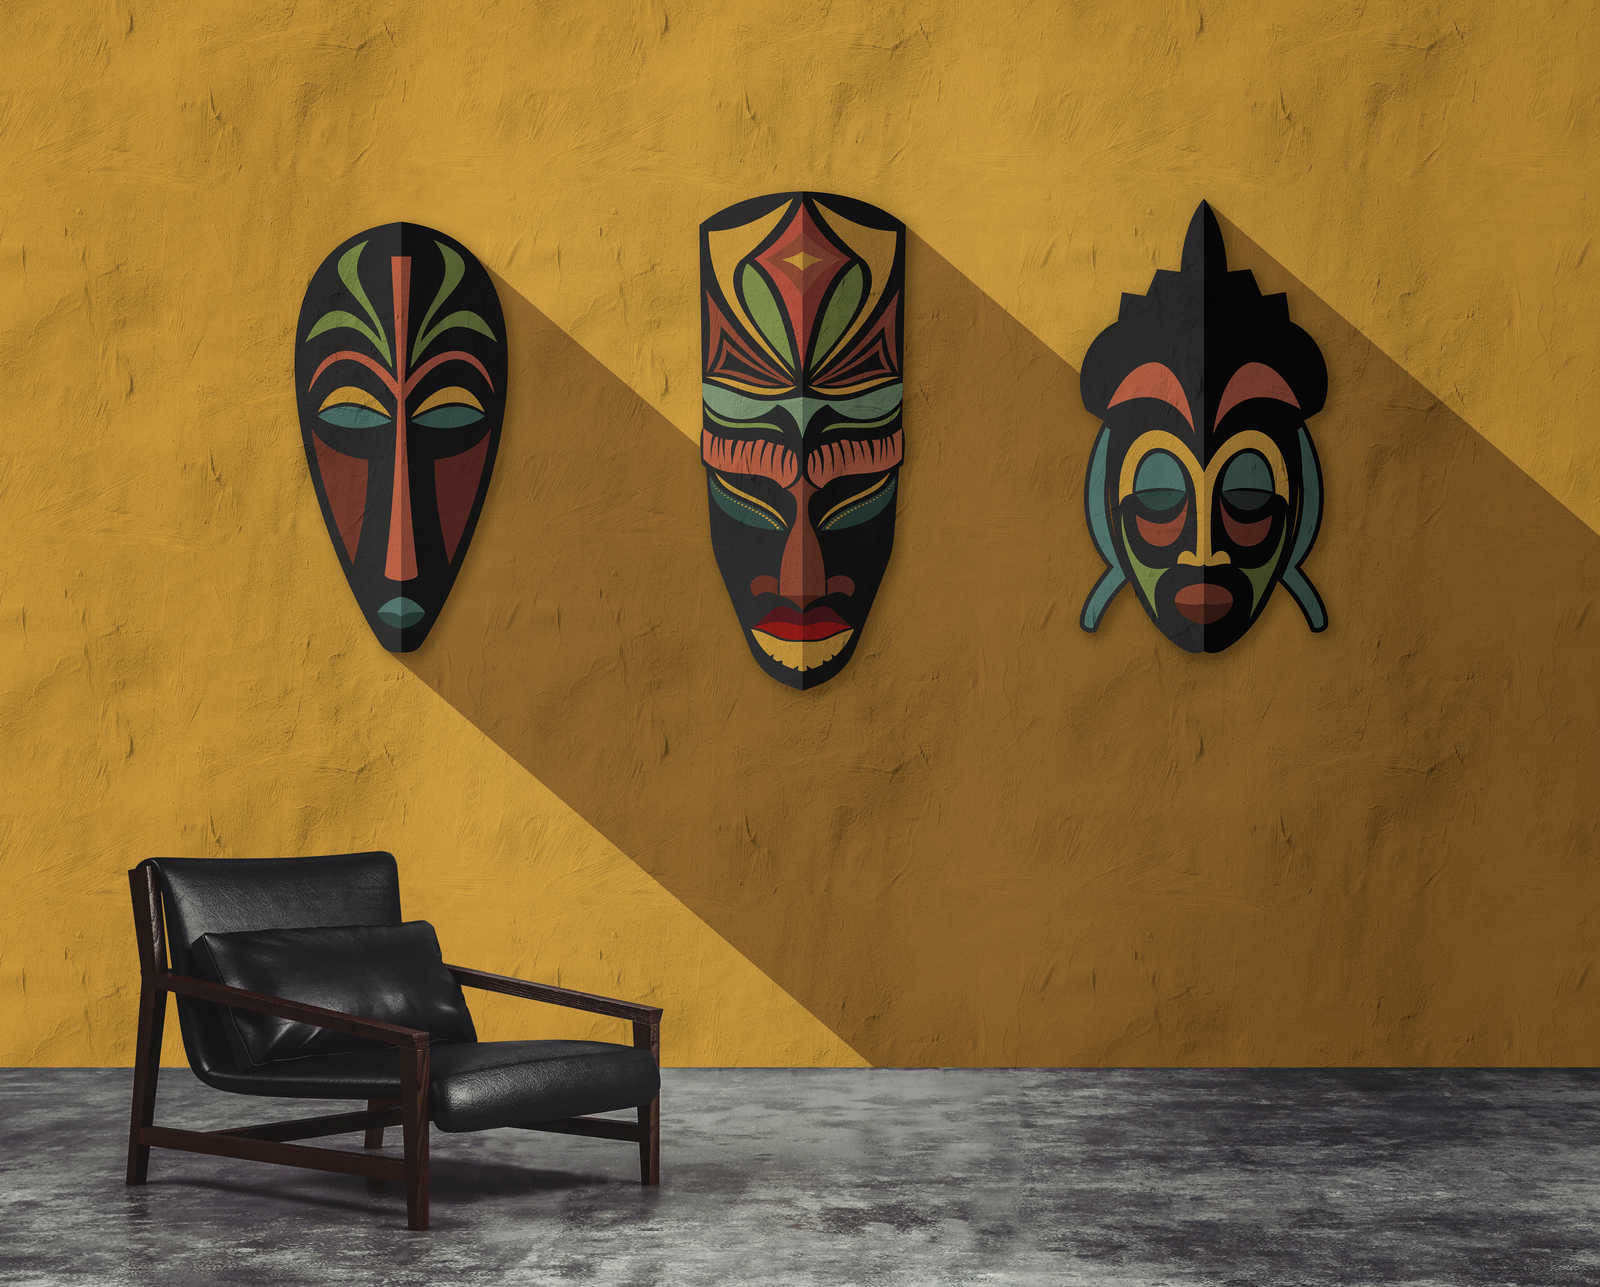             Zulu 1 - Papier peint jaune moutarde, Africa Masks Zulu Design
        